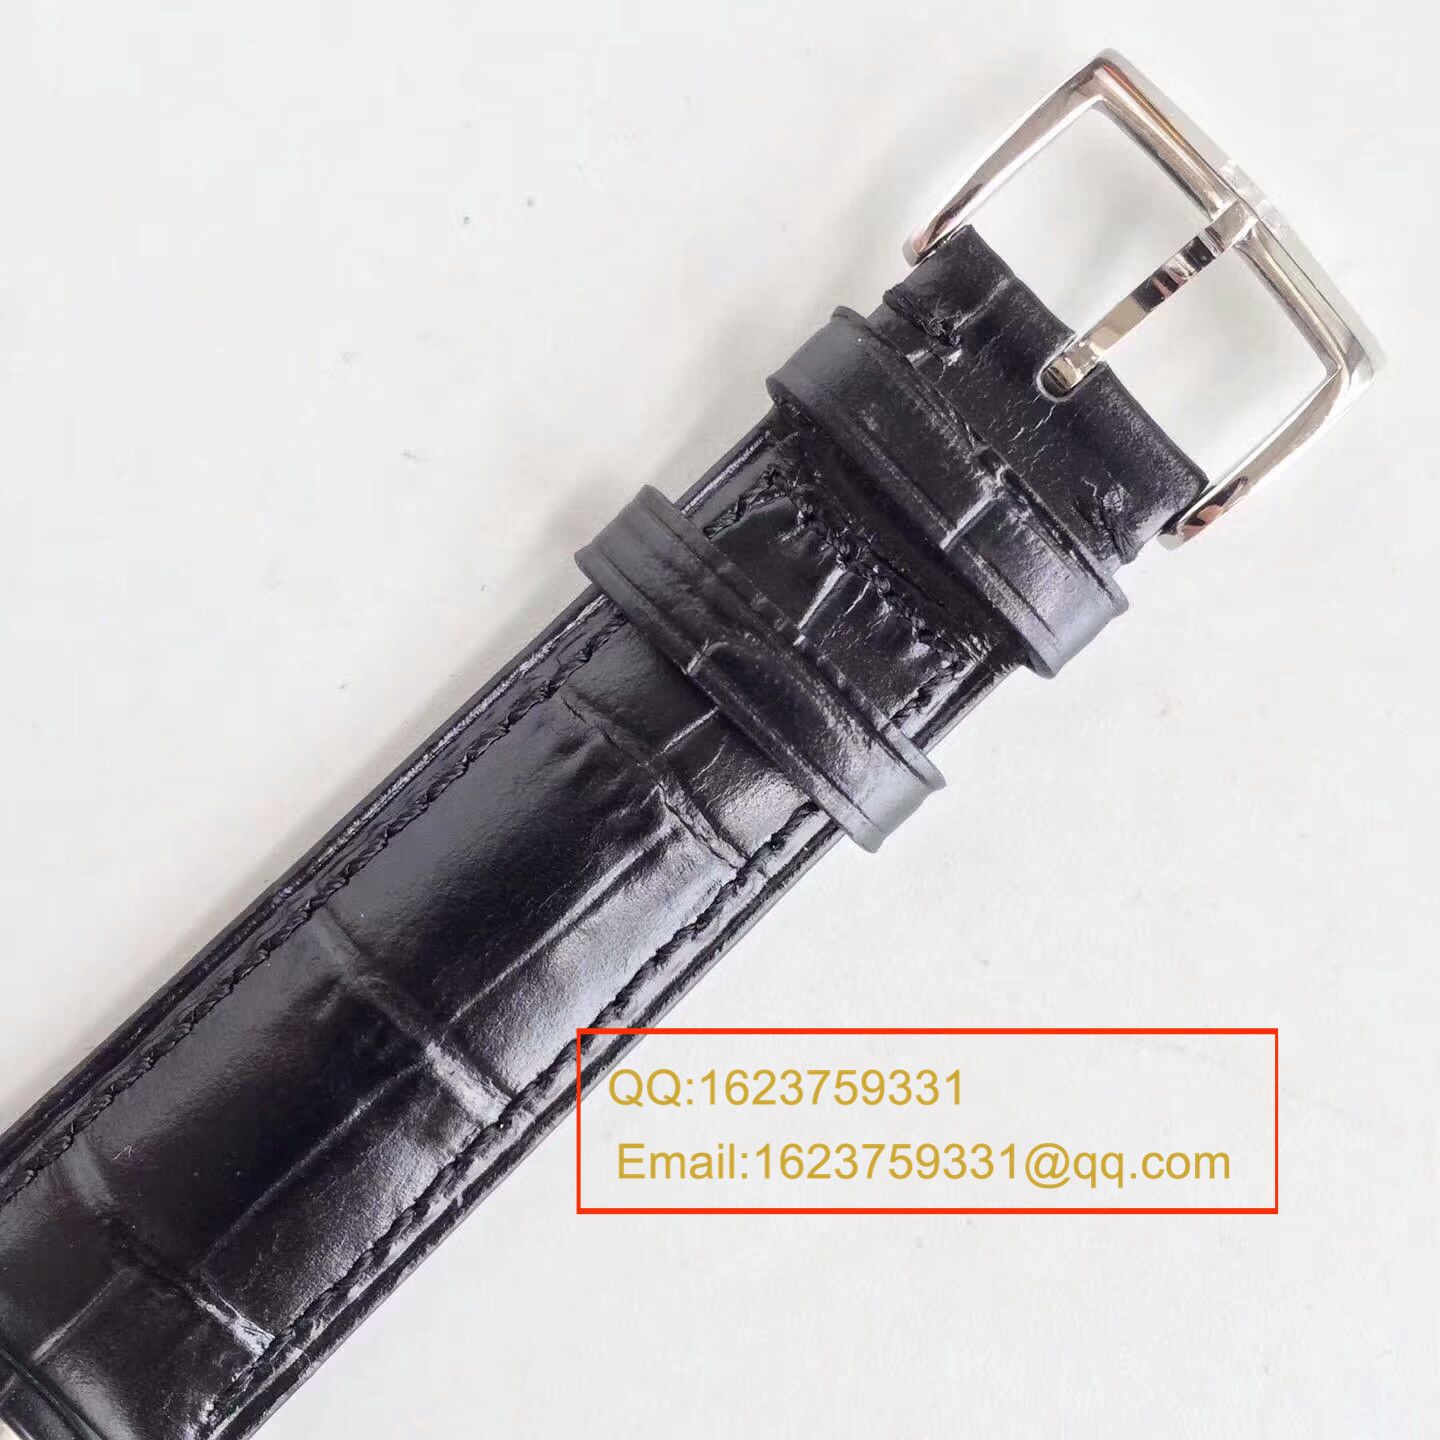 【GF1:1超A高仿手表】格拉苏蒂原创精髓议员天文台腕表系列 1-58-04-04-04-04腕表 / GLA041